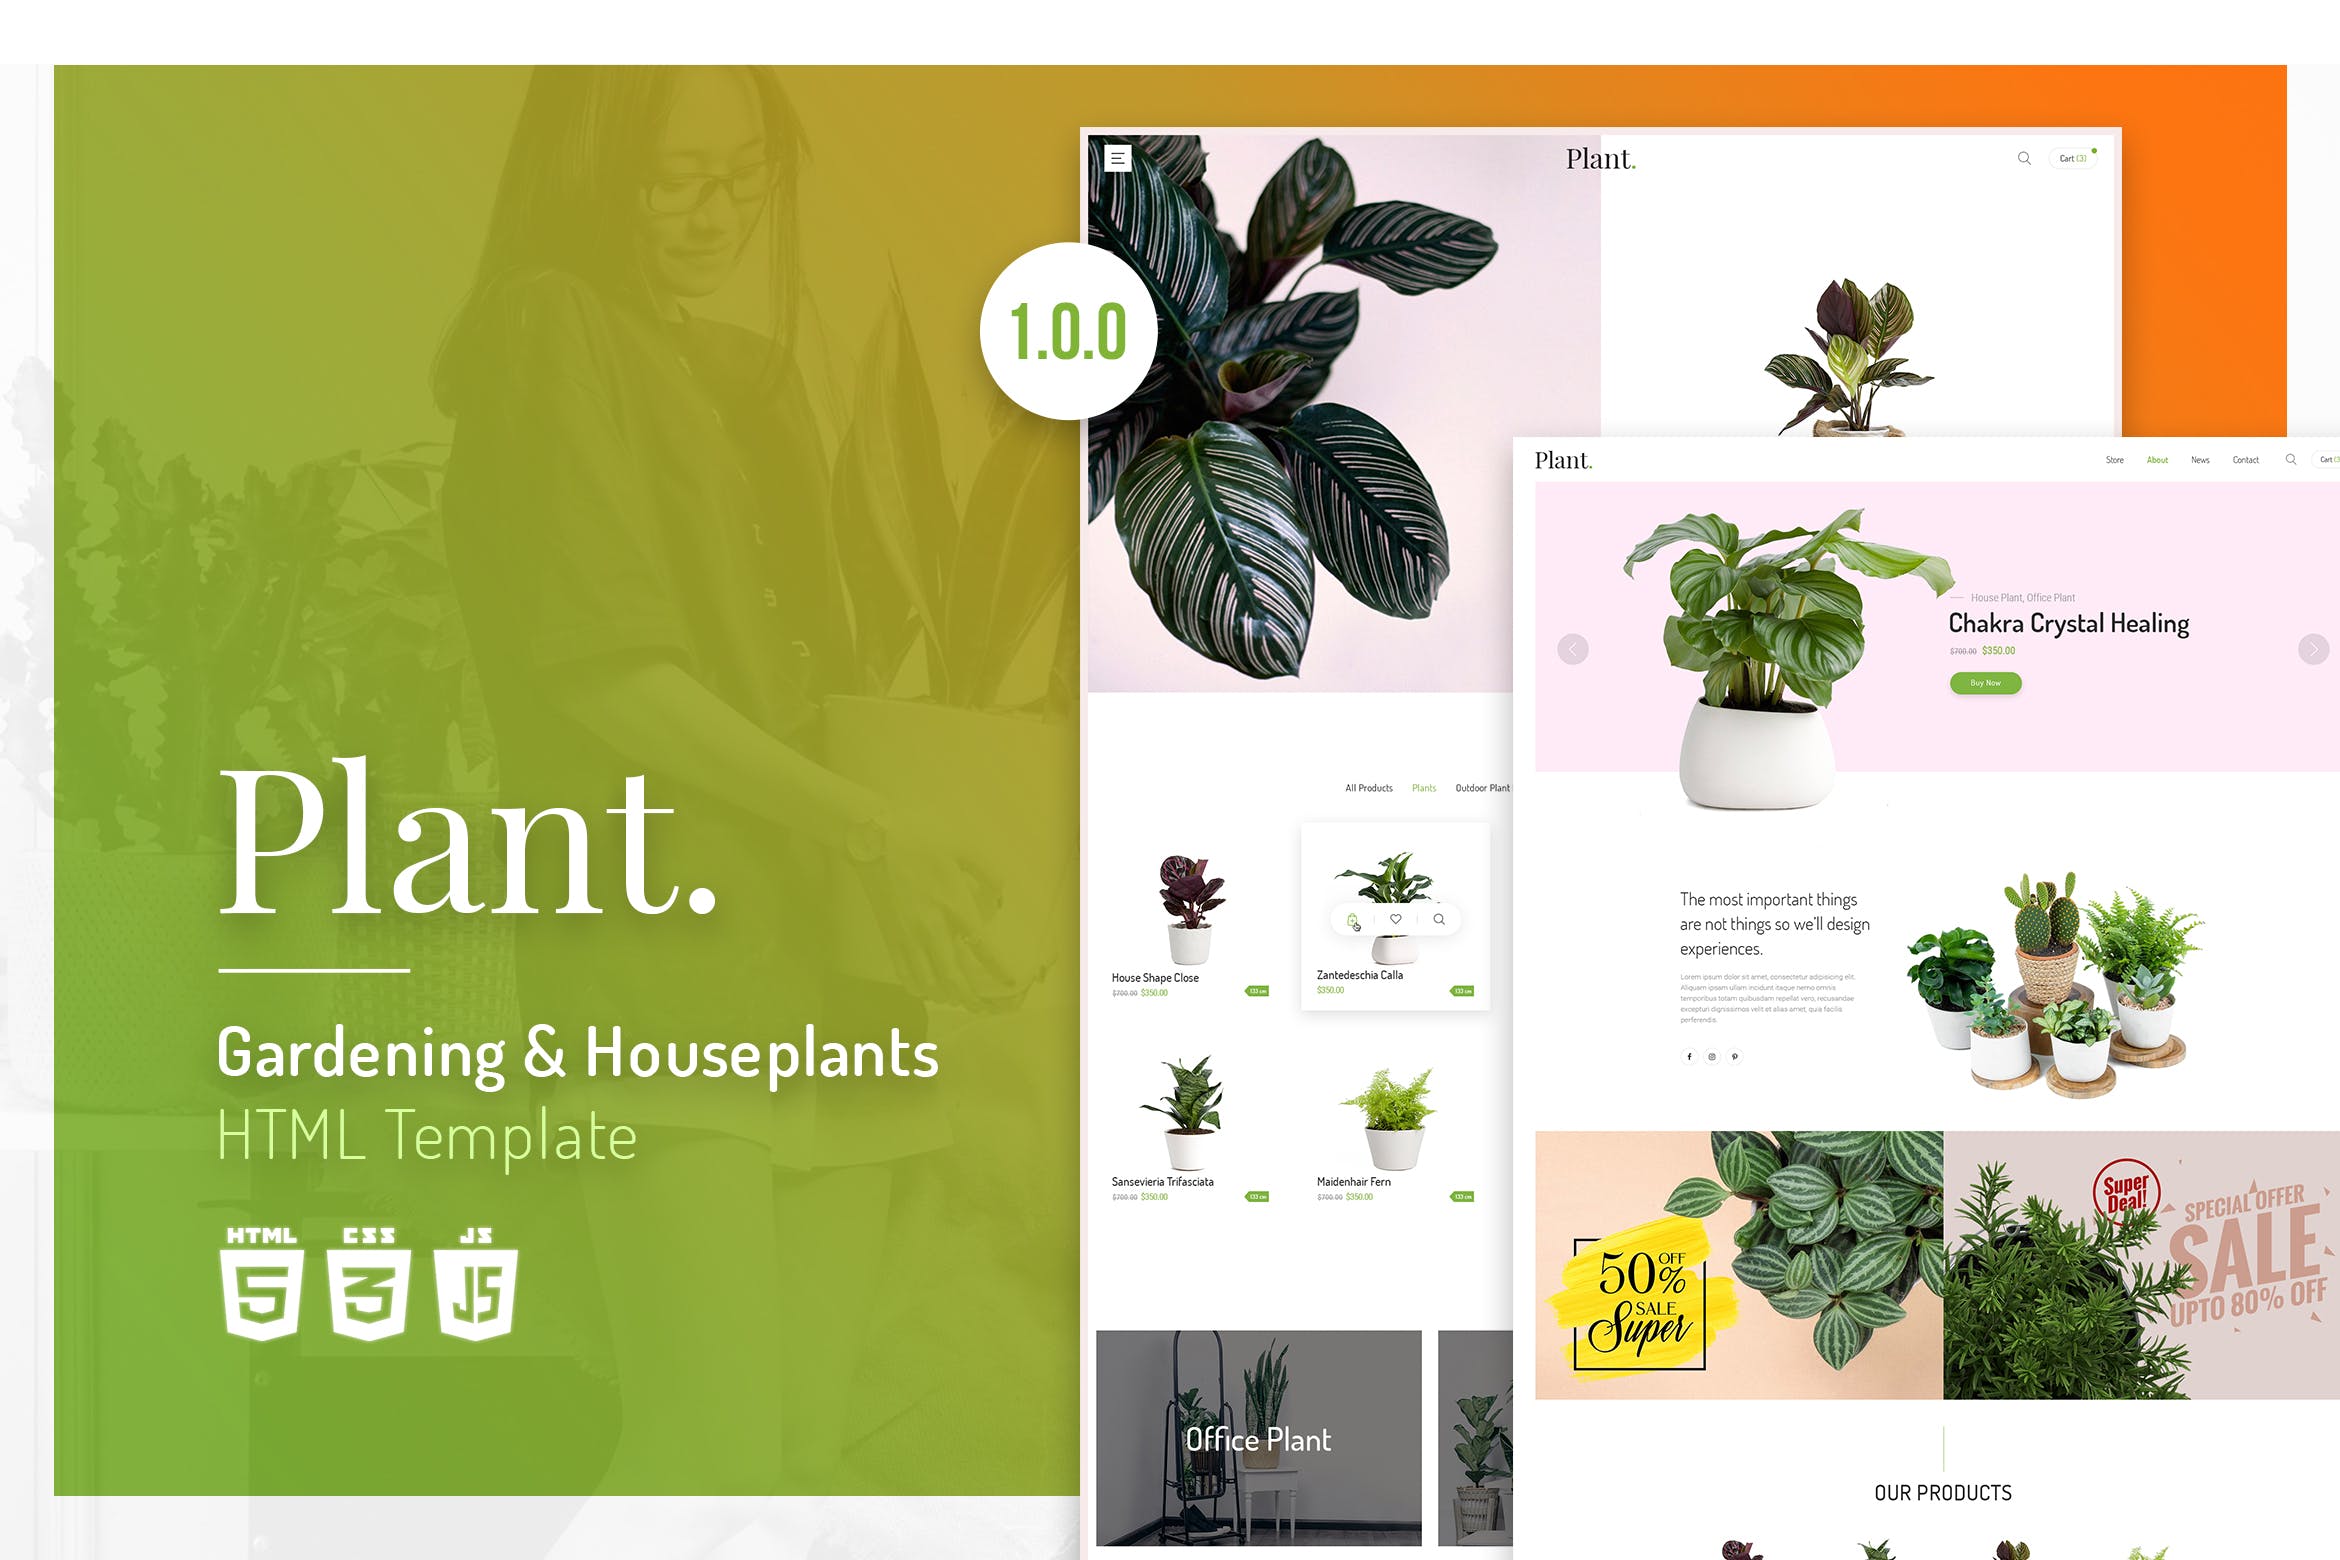 植物园艺设计/盆栽植物网上商城HTML模板素材库精选 Plant | Gardening & Houseplants HTML Template插图